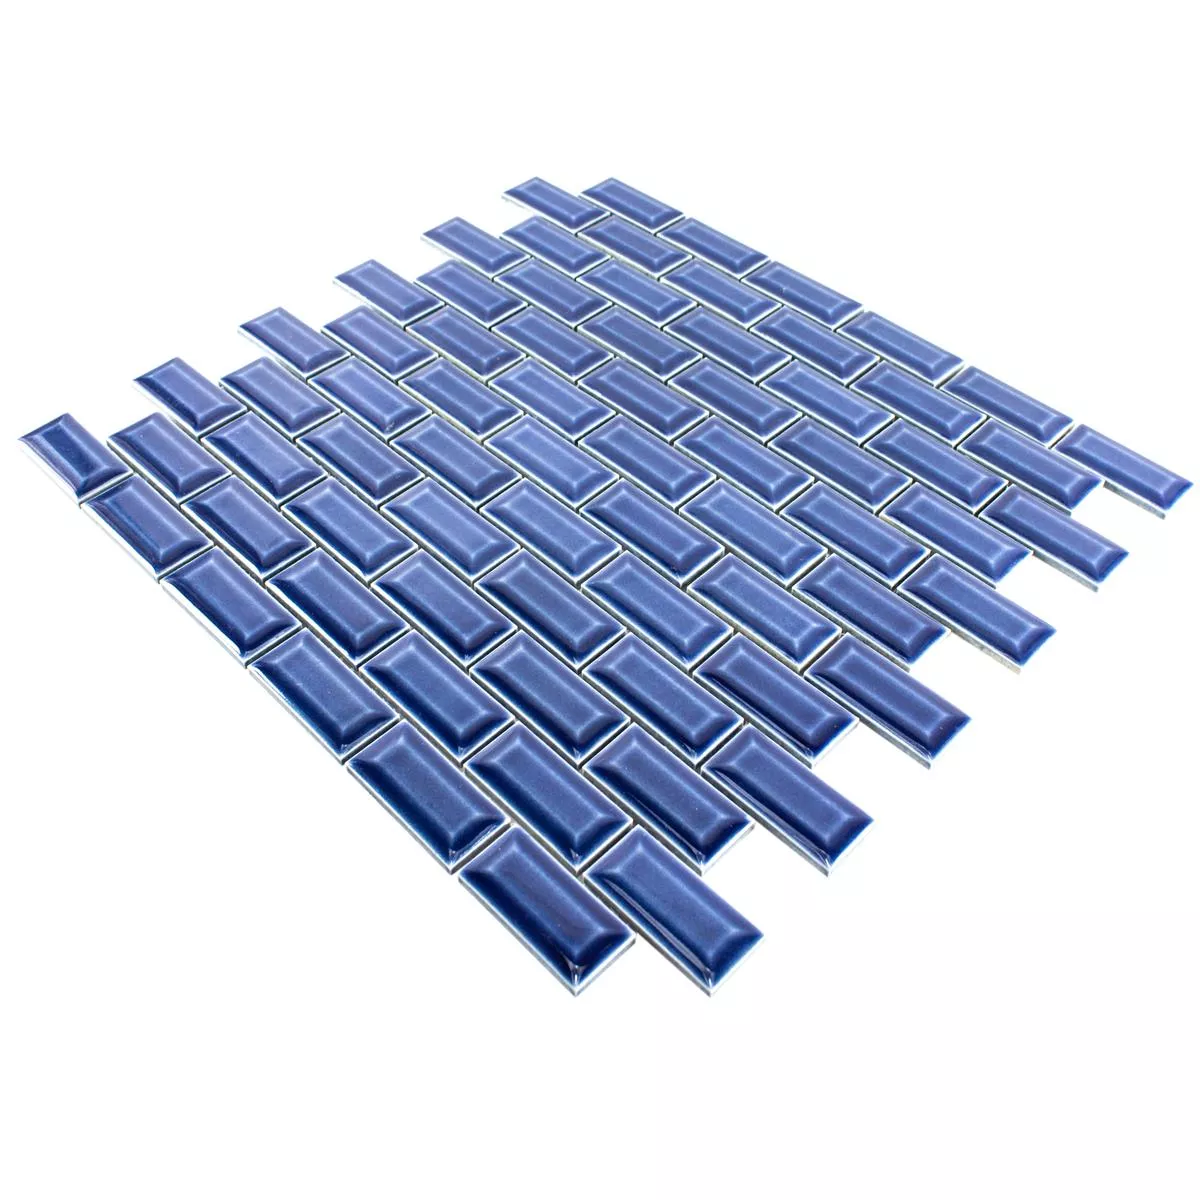 Ceramic Mosaic Tiles Organica Metro Blue